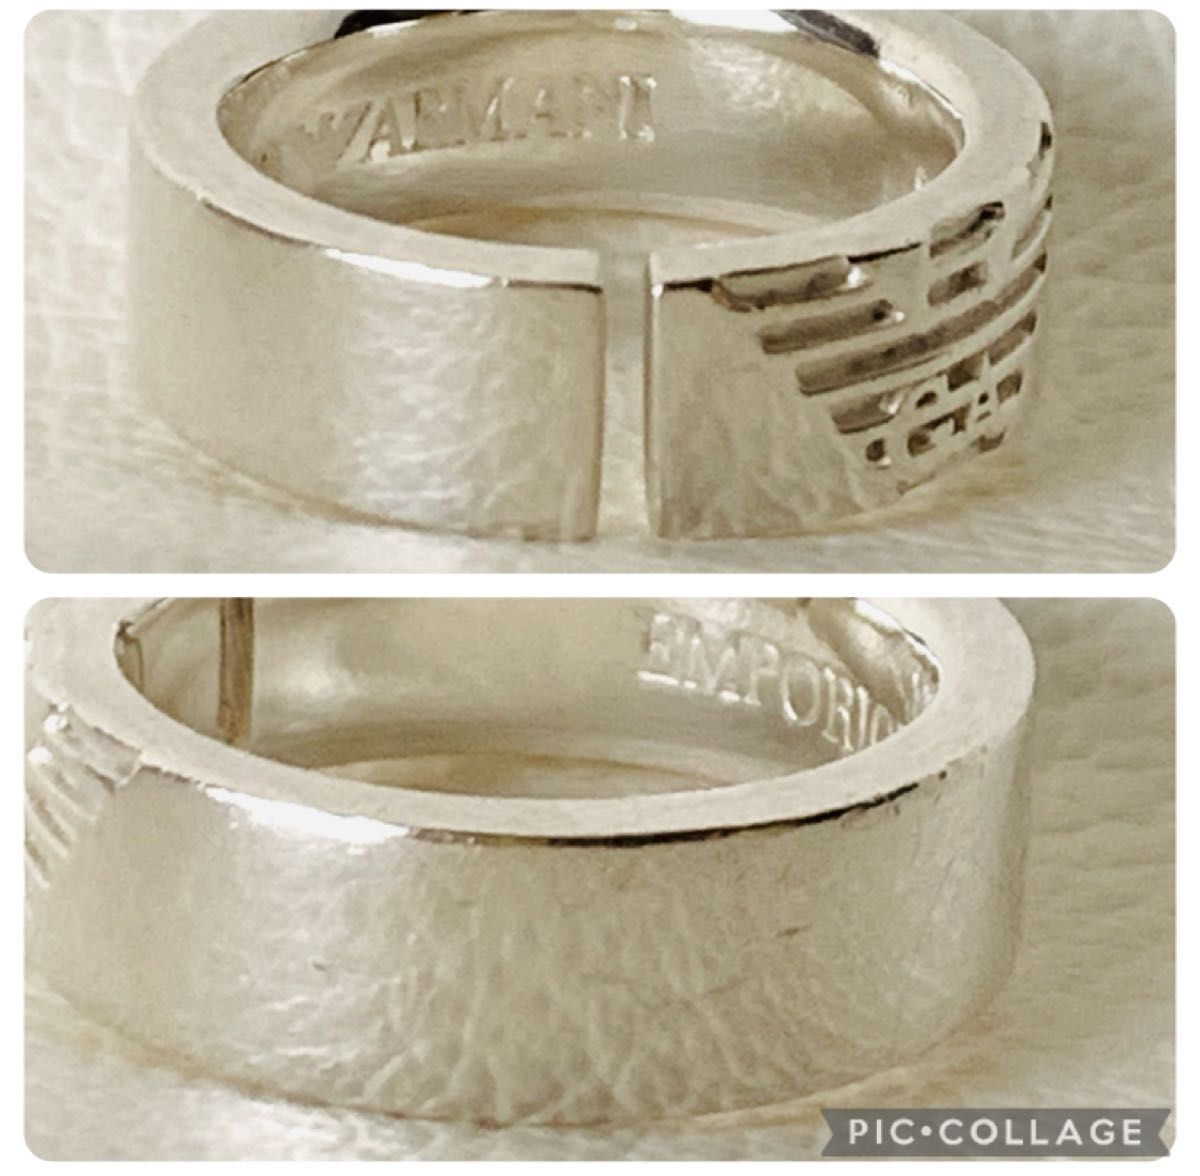 綺麗 ARMANIエンポリオアルマーニ シルバー 925 リング 指輪 10号